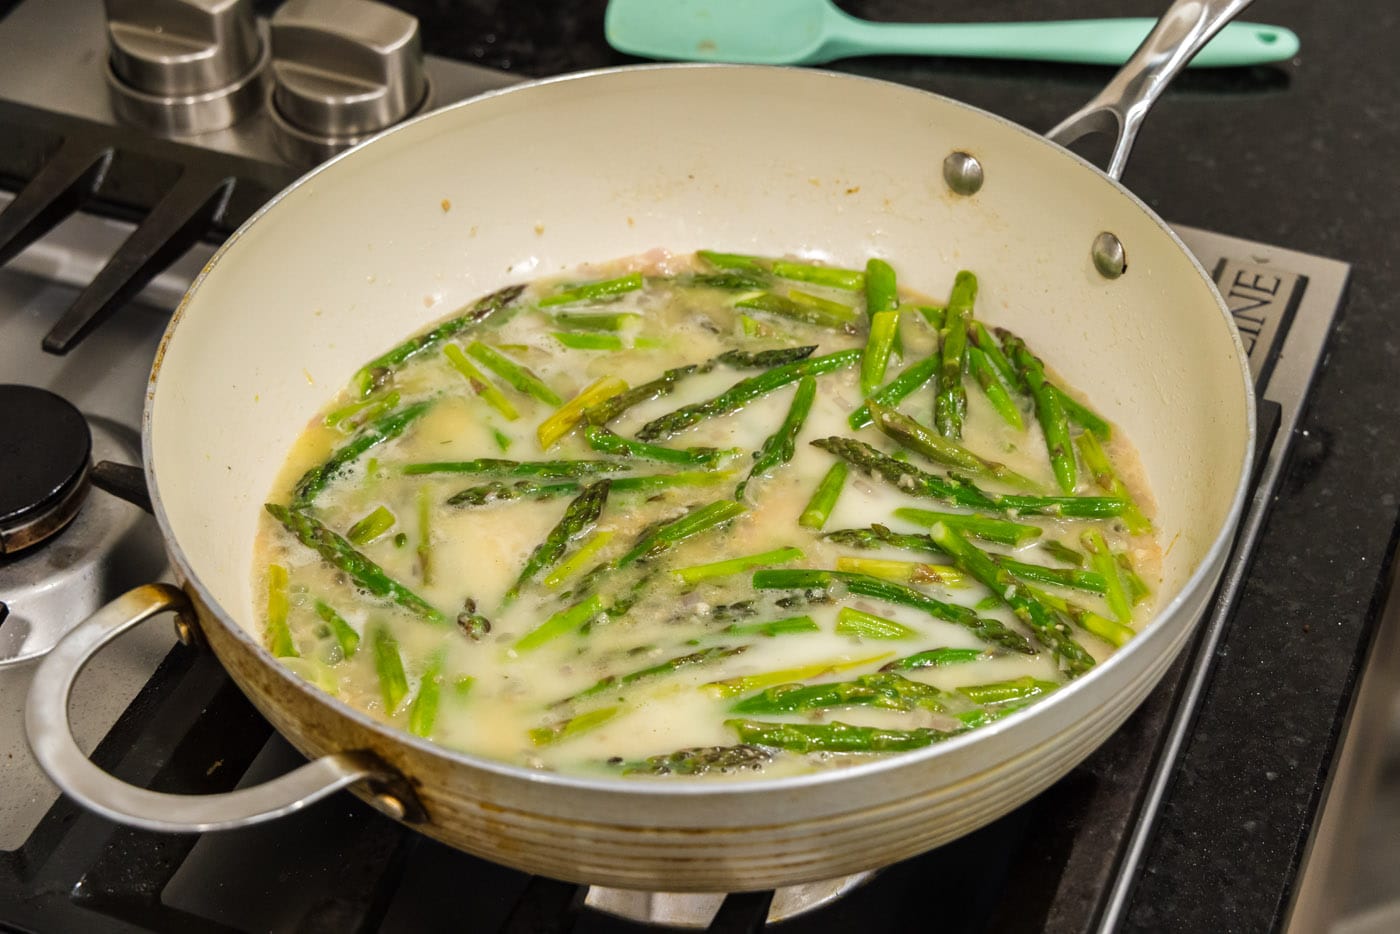 cornstarch slurry added to thicken asparagus pasta sauce